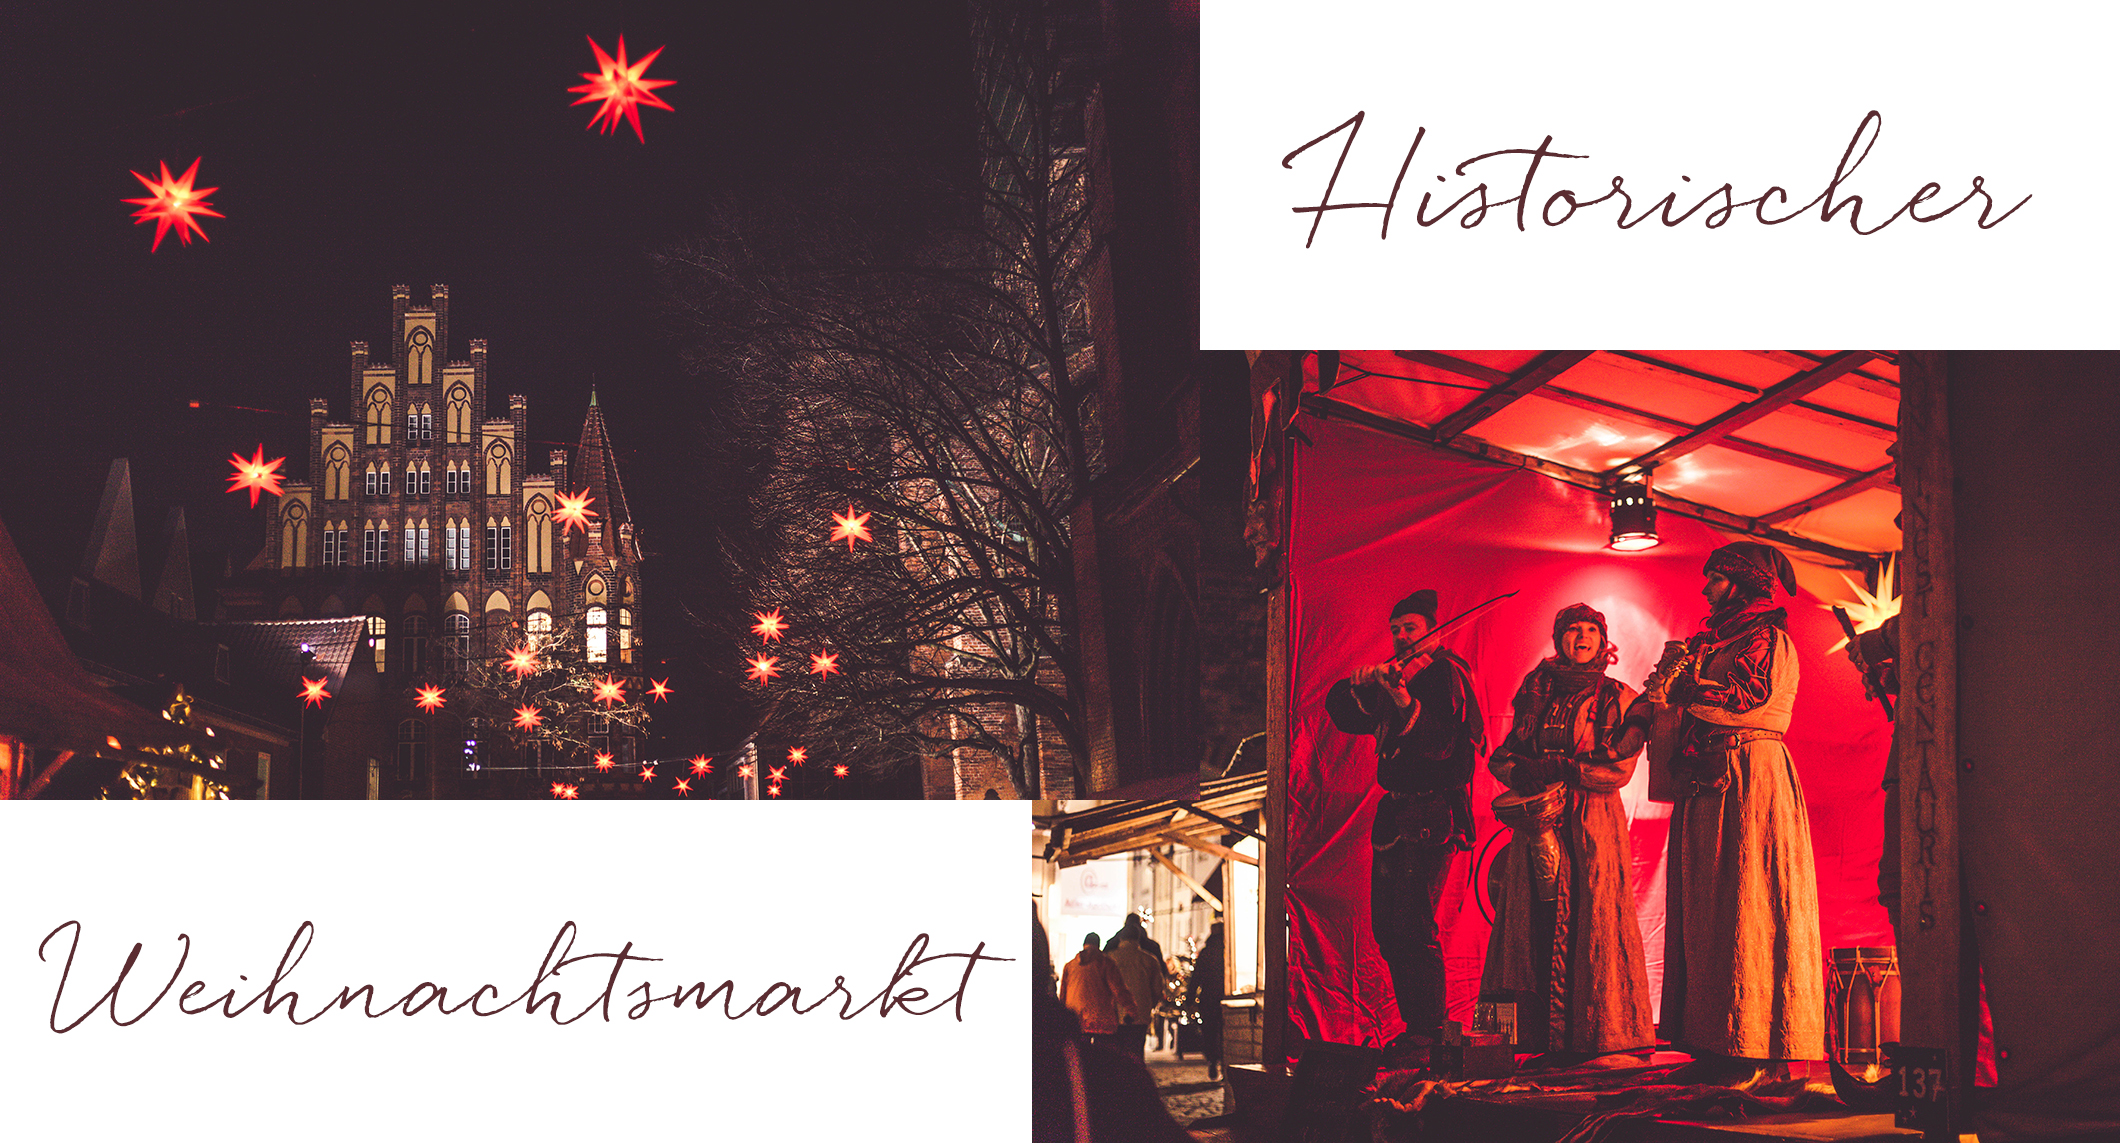 Schlendere jetzt mit mir durch die geschmückten Altstadtstraßen und über den wunderschönen Lübecker Weihnachtsmarkt. Dort wartet ein neuer Geheimtipp!